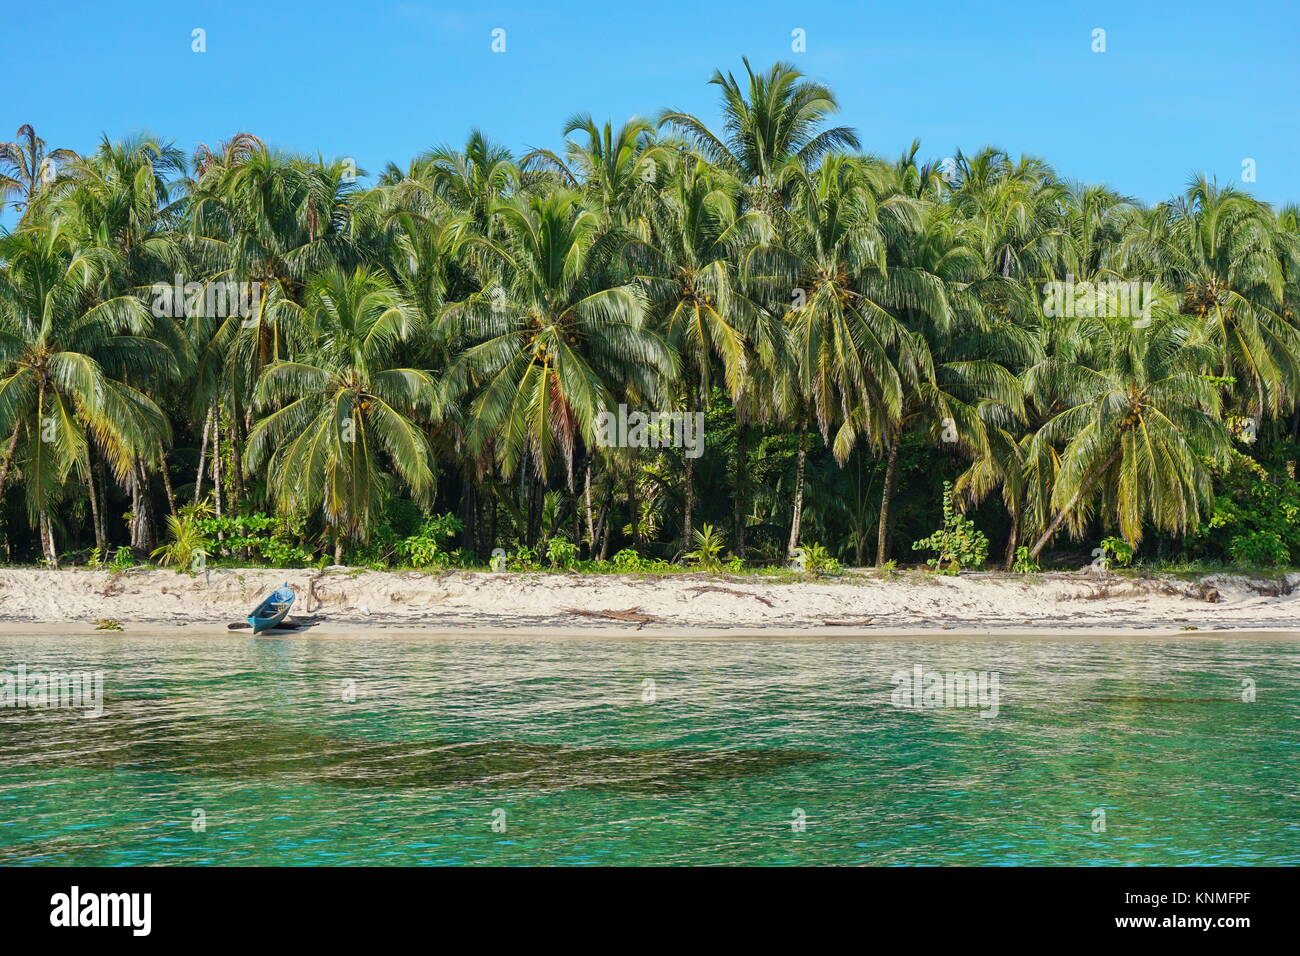 Die üppigen tropischen Strand mit Kokospalmen und einem hölzernen Einbaum auf dem Sand, Karibik, Bocas del Toro, Panama, Mittelamerika Stockfoto